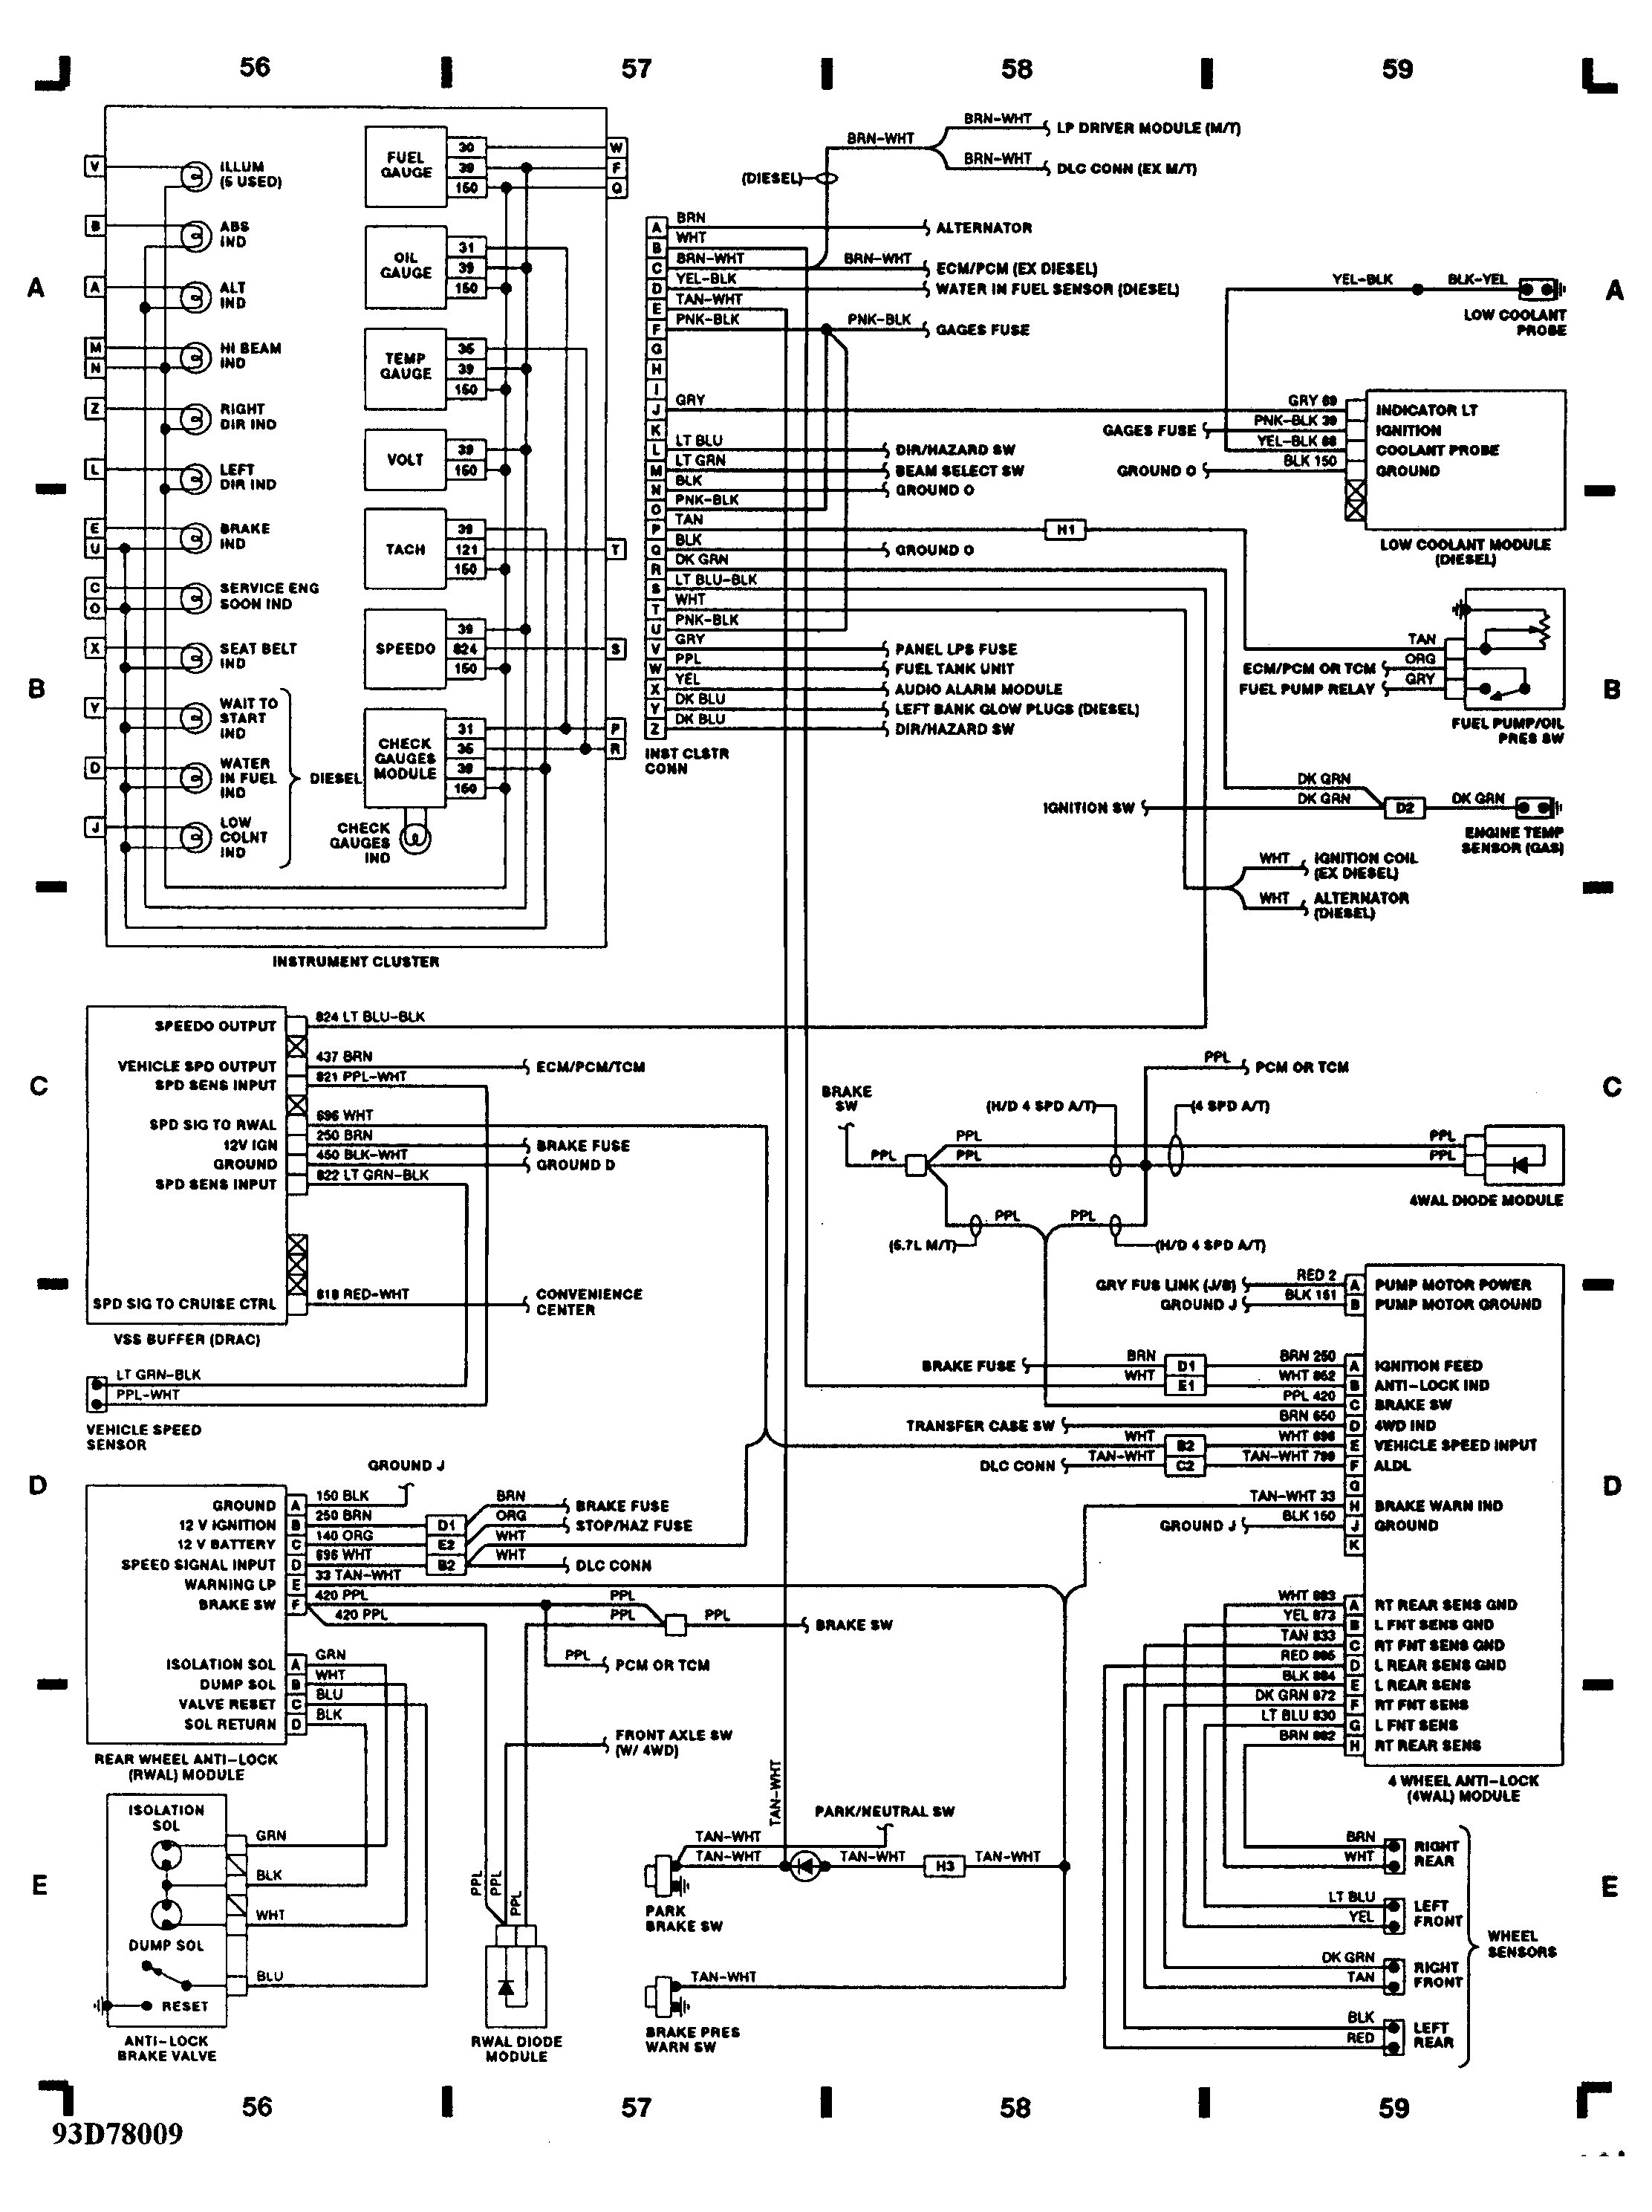 chevy silverado wiring diagram source jdmop graphic